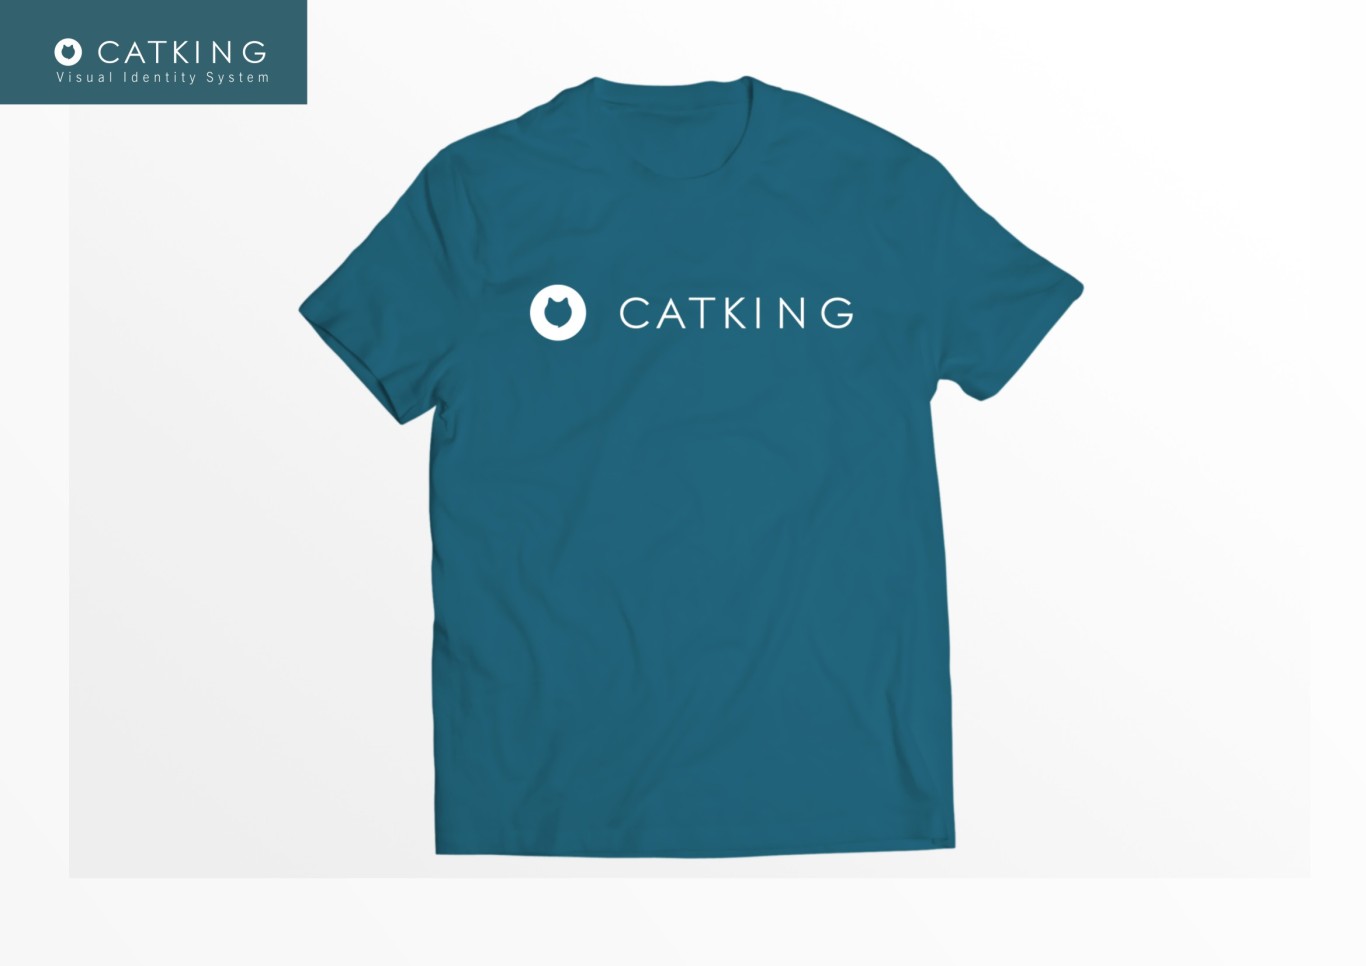 猫王/CATKING 视觉识别系统升级&包装升级图28